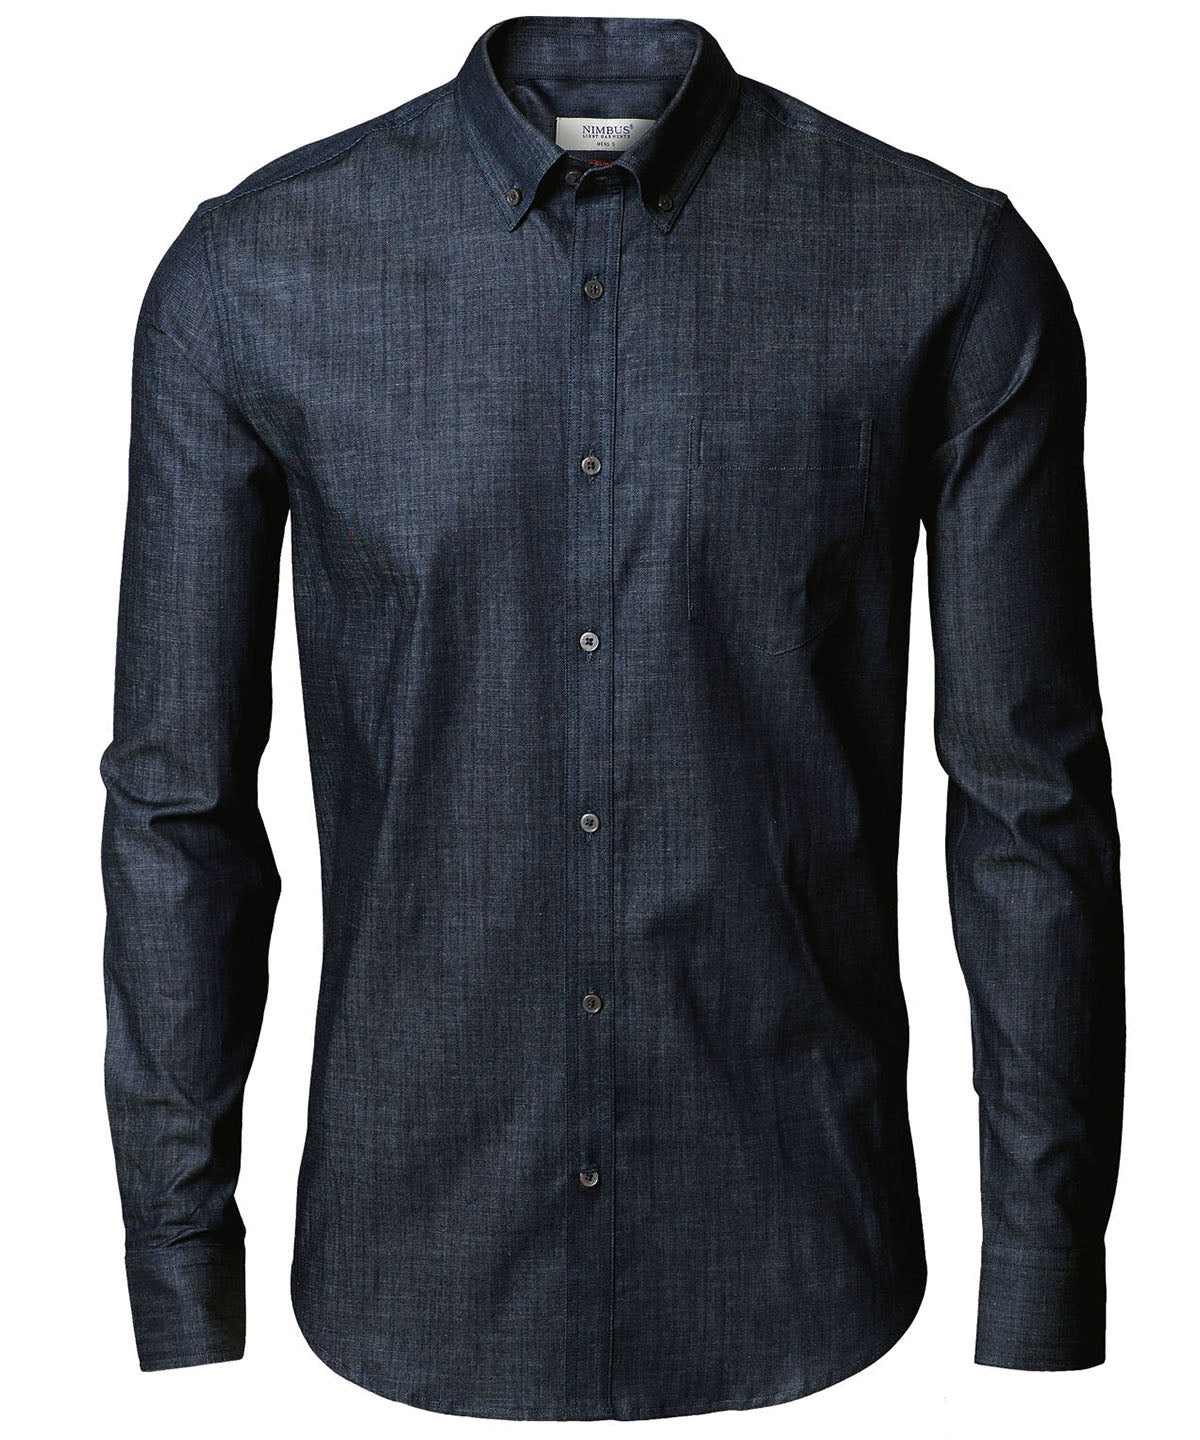 Nimbus Torrance slim fit – raw and stylish denim shirt